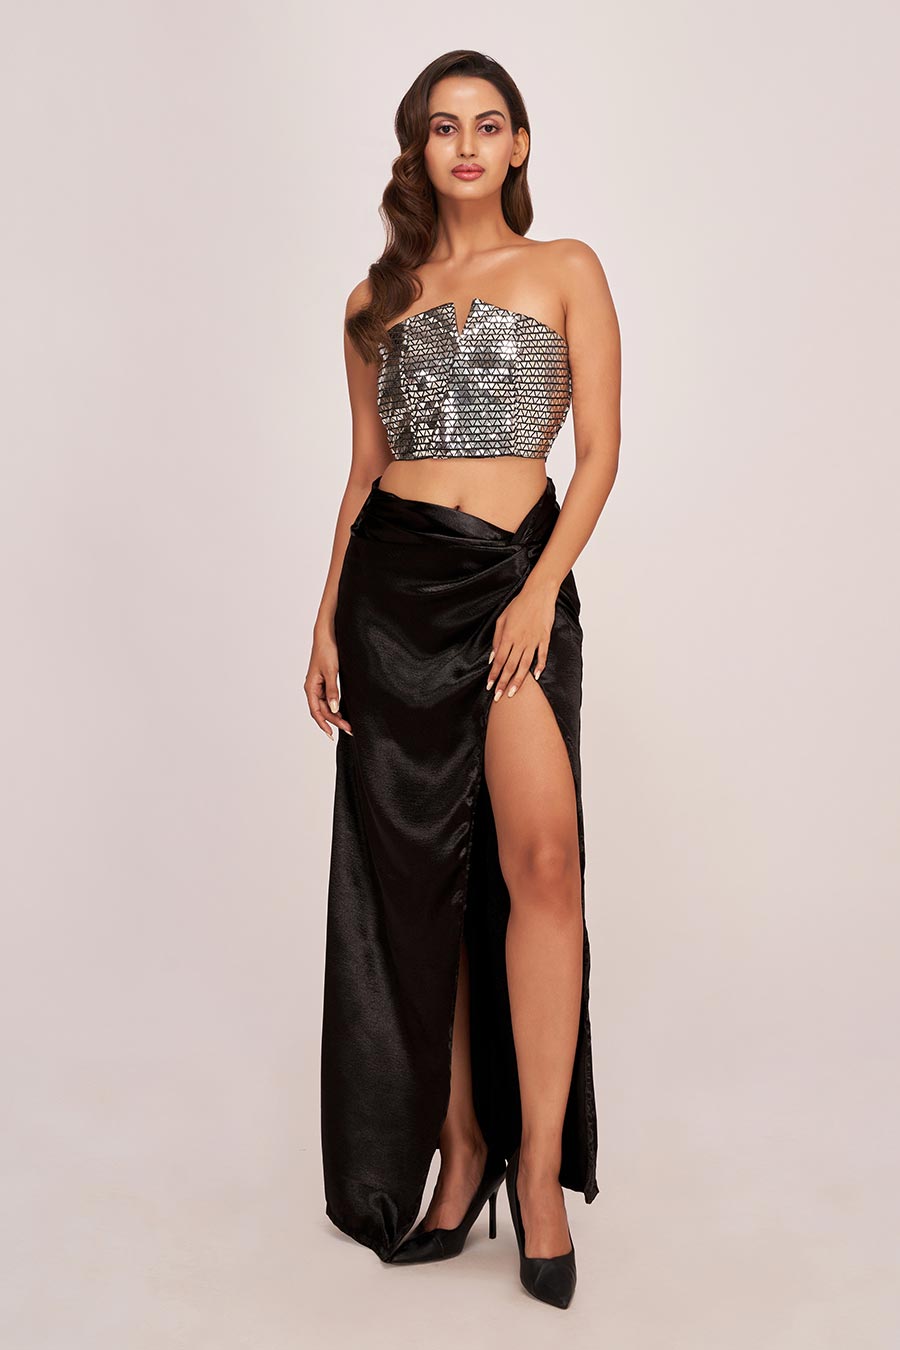 Silver Embellished Top & Black Long Skirt Co-Ord Set